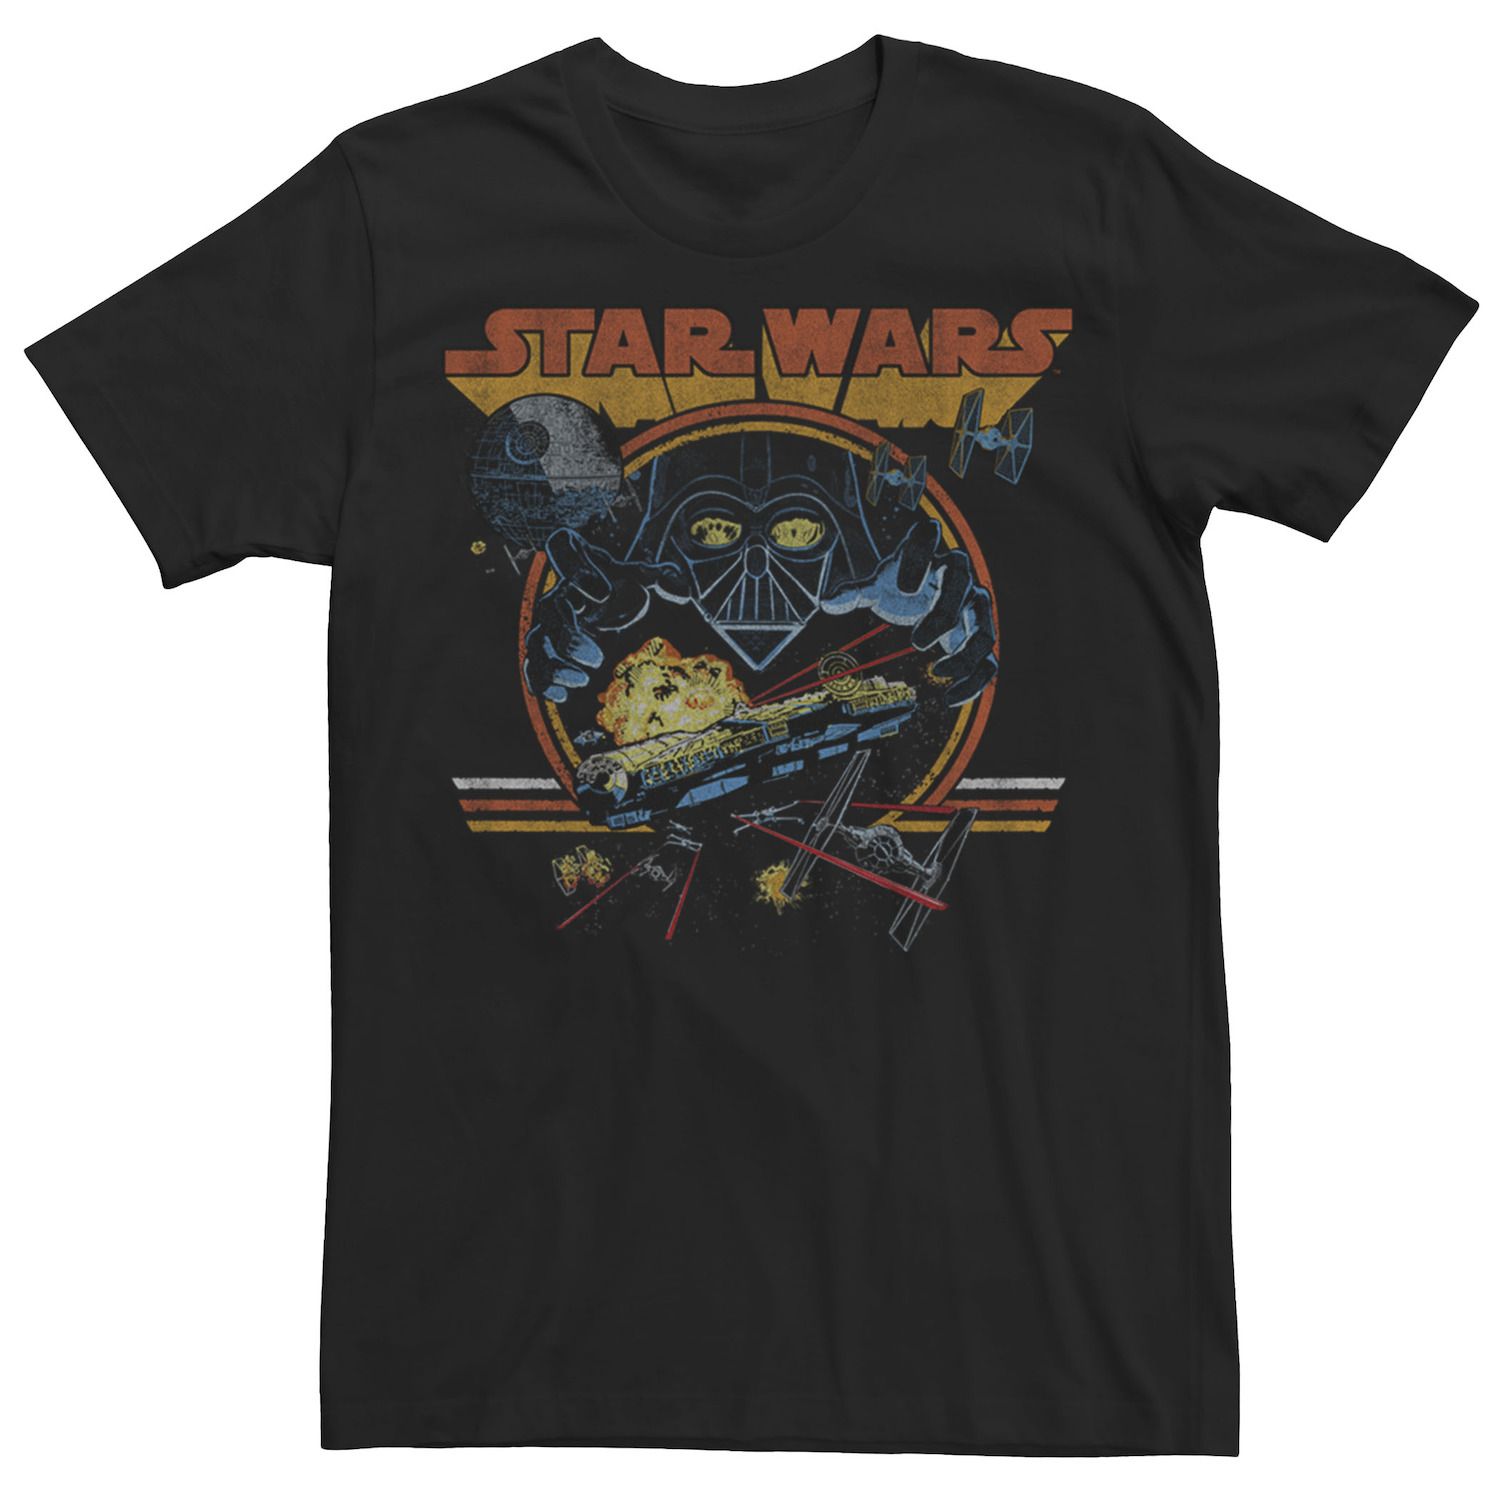 Мужская футболка с плакатом в стиле ретро-коллаж Star Wars